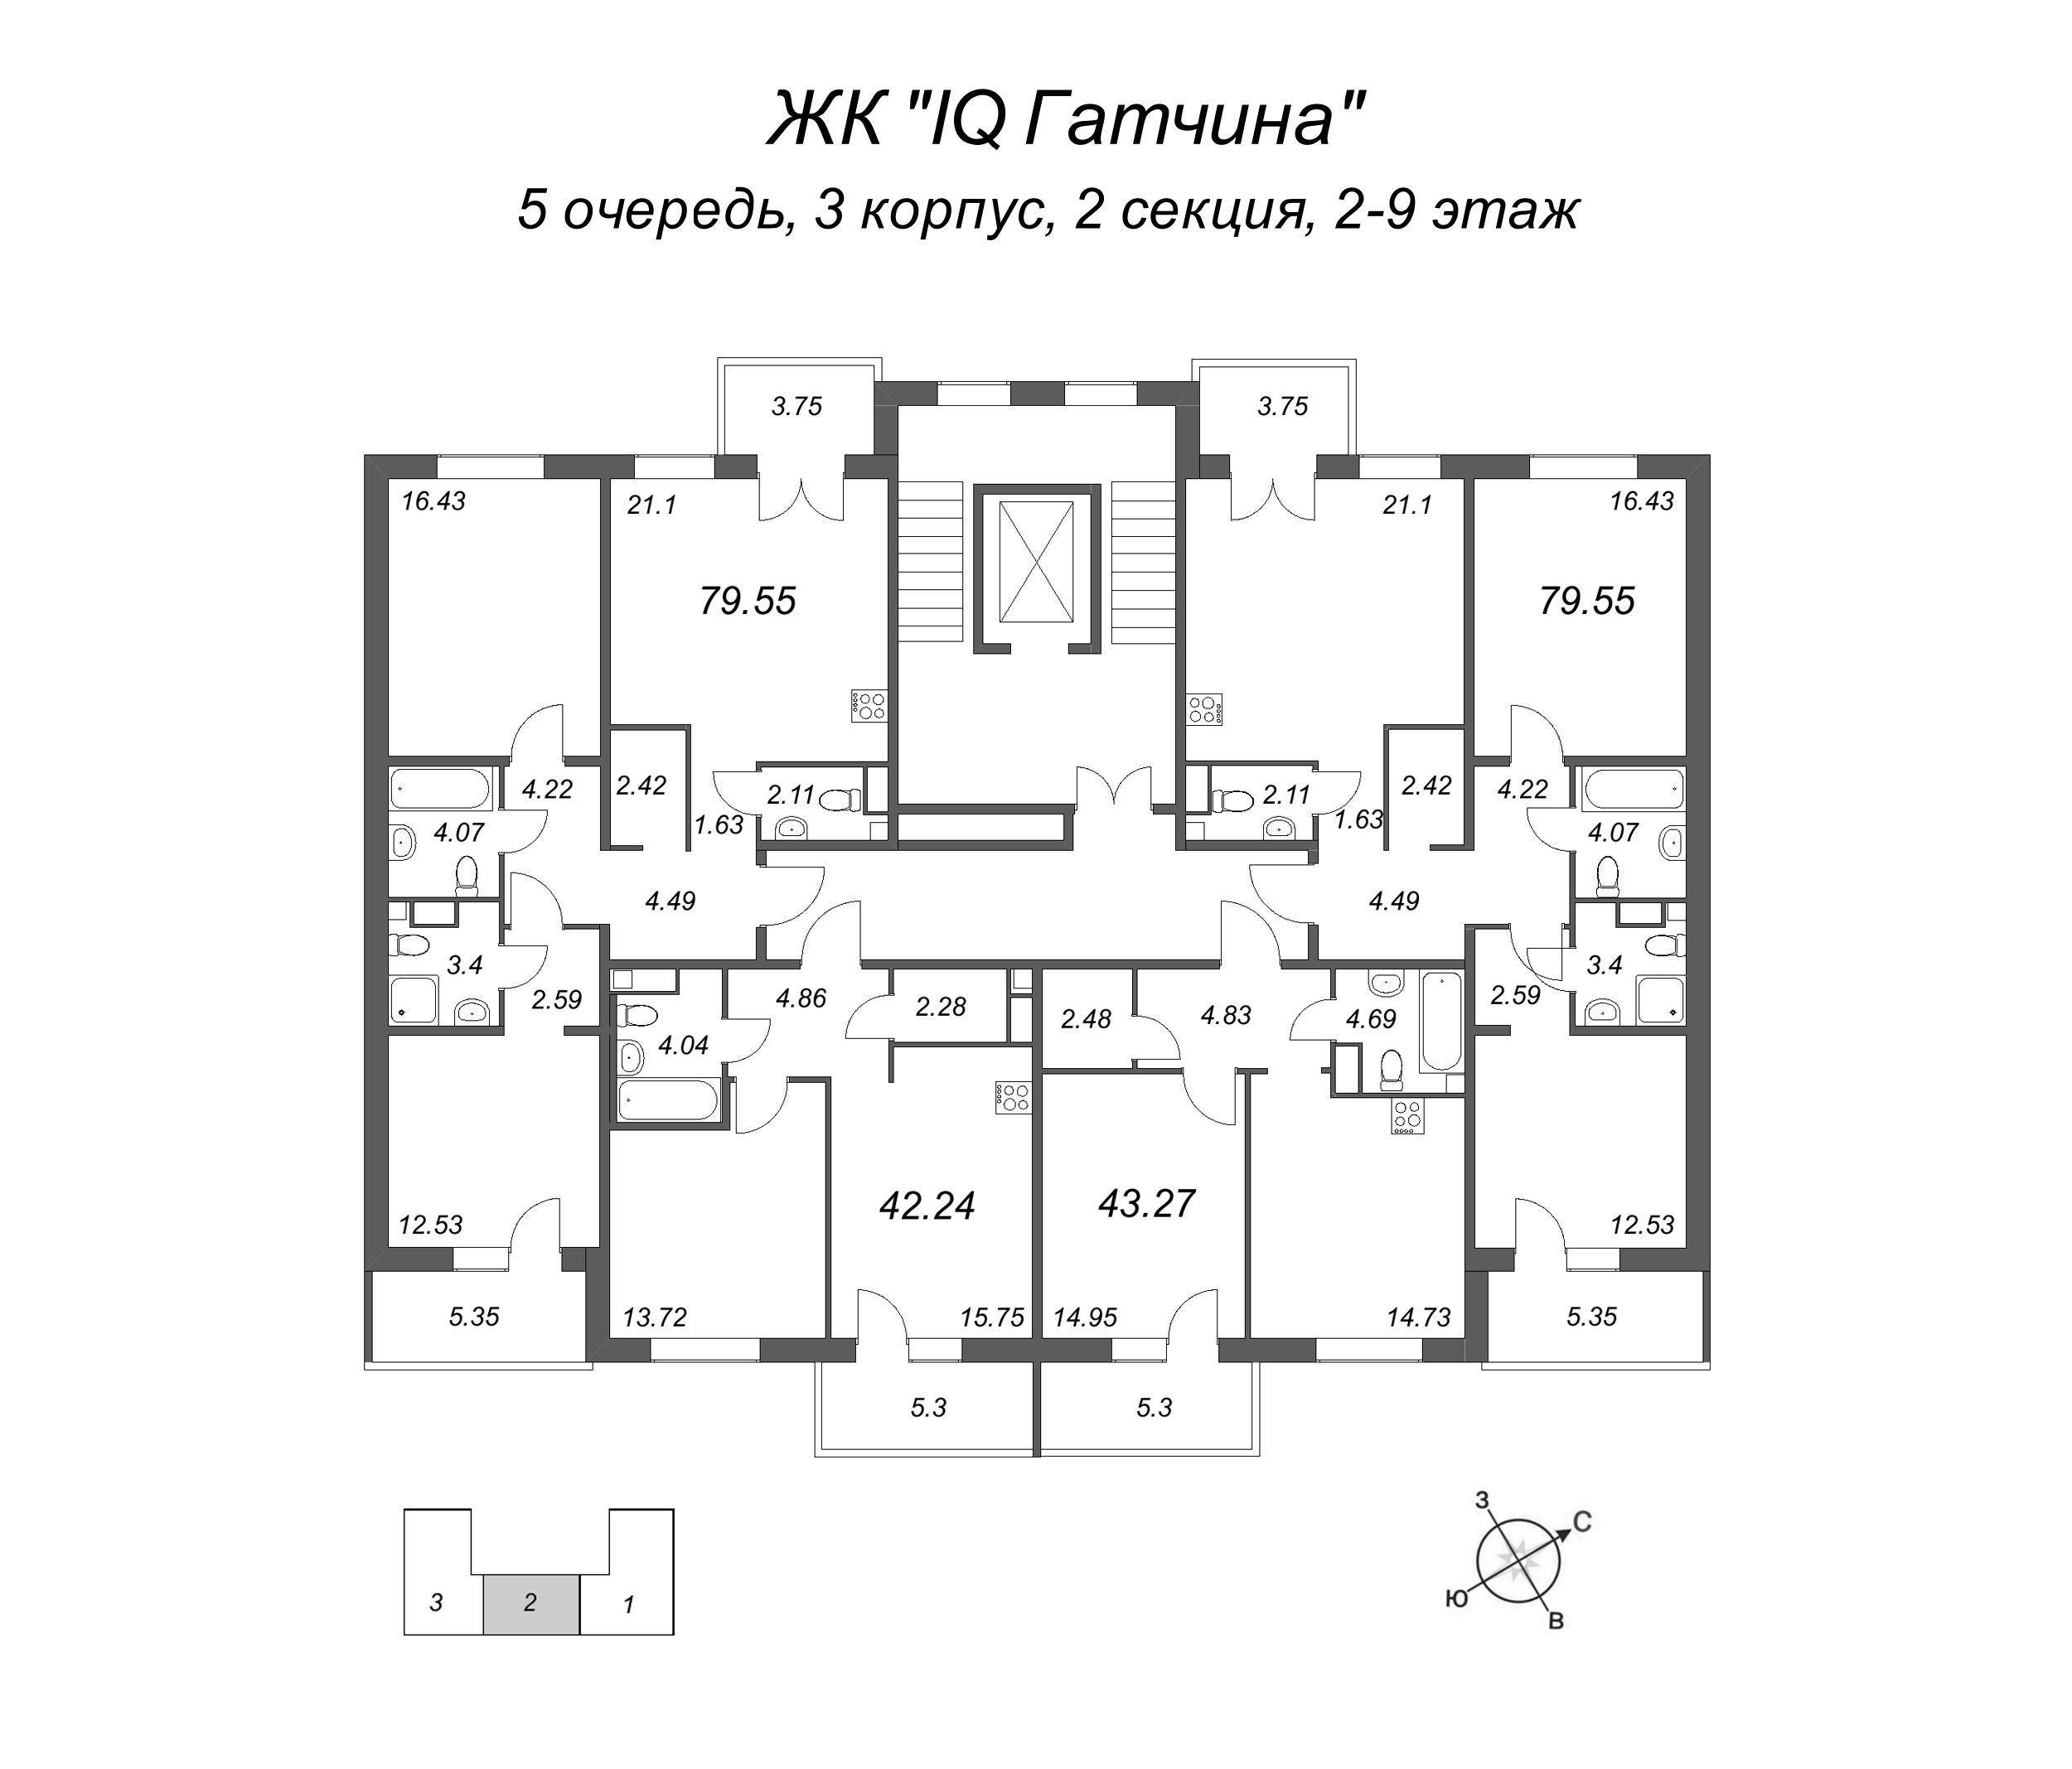 2-комнатная (Евро) квартира, 45.95 м² в ЖК "IQ Гатчина" - планировка этажа